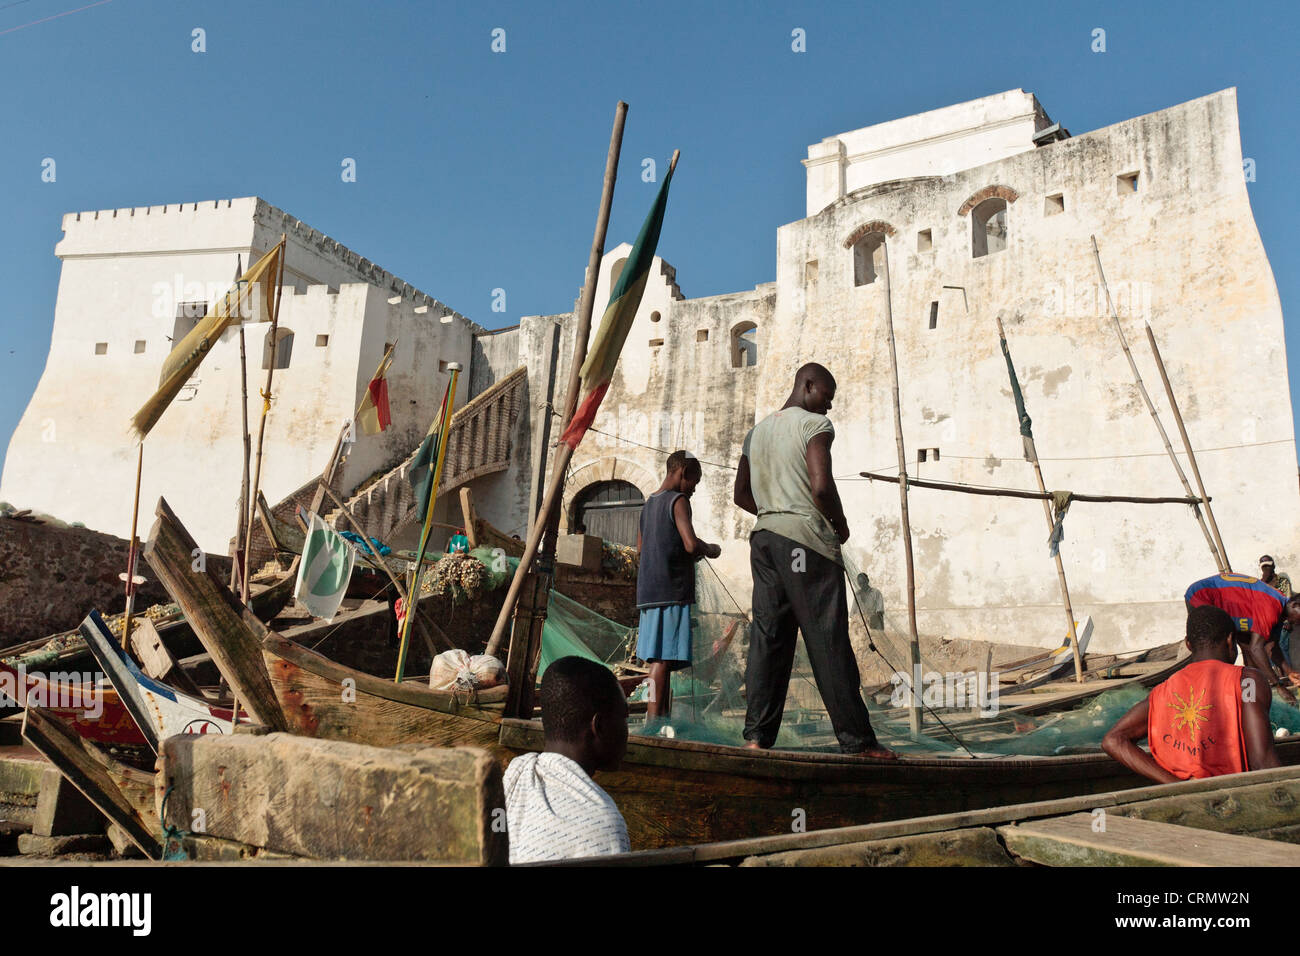 Men on fishing boats near Cape Coast castle, Cape Coast, Ghana Stock Photo